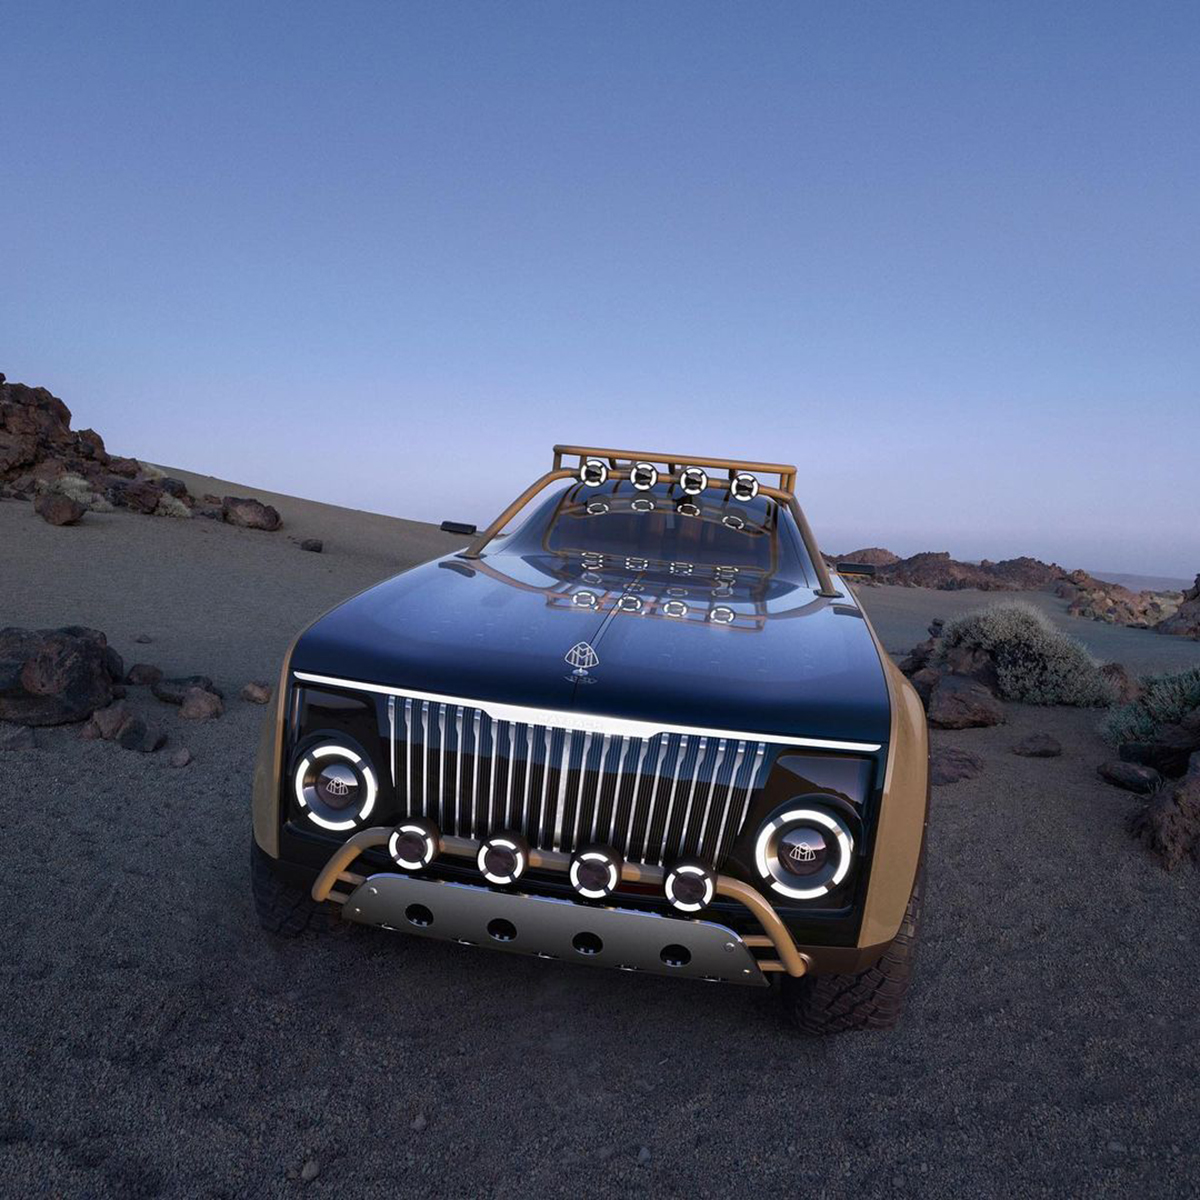 Mercedes-Maybach : l’ultime concept-car futuriste et solaire de Virgil Abloh ! (vidéo sur Bidfoly.com) Par Justine Mellado Maybach-mercedes-benz-virgil-abloh-5